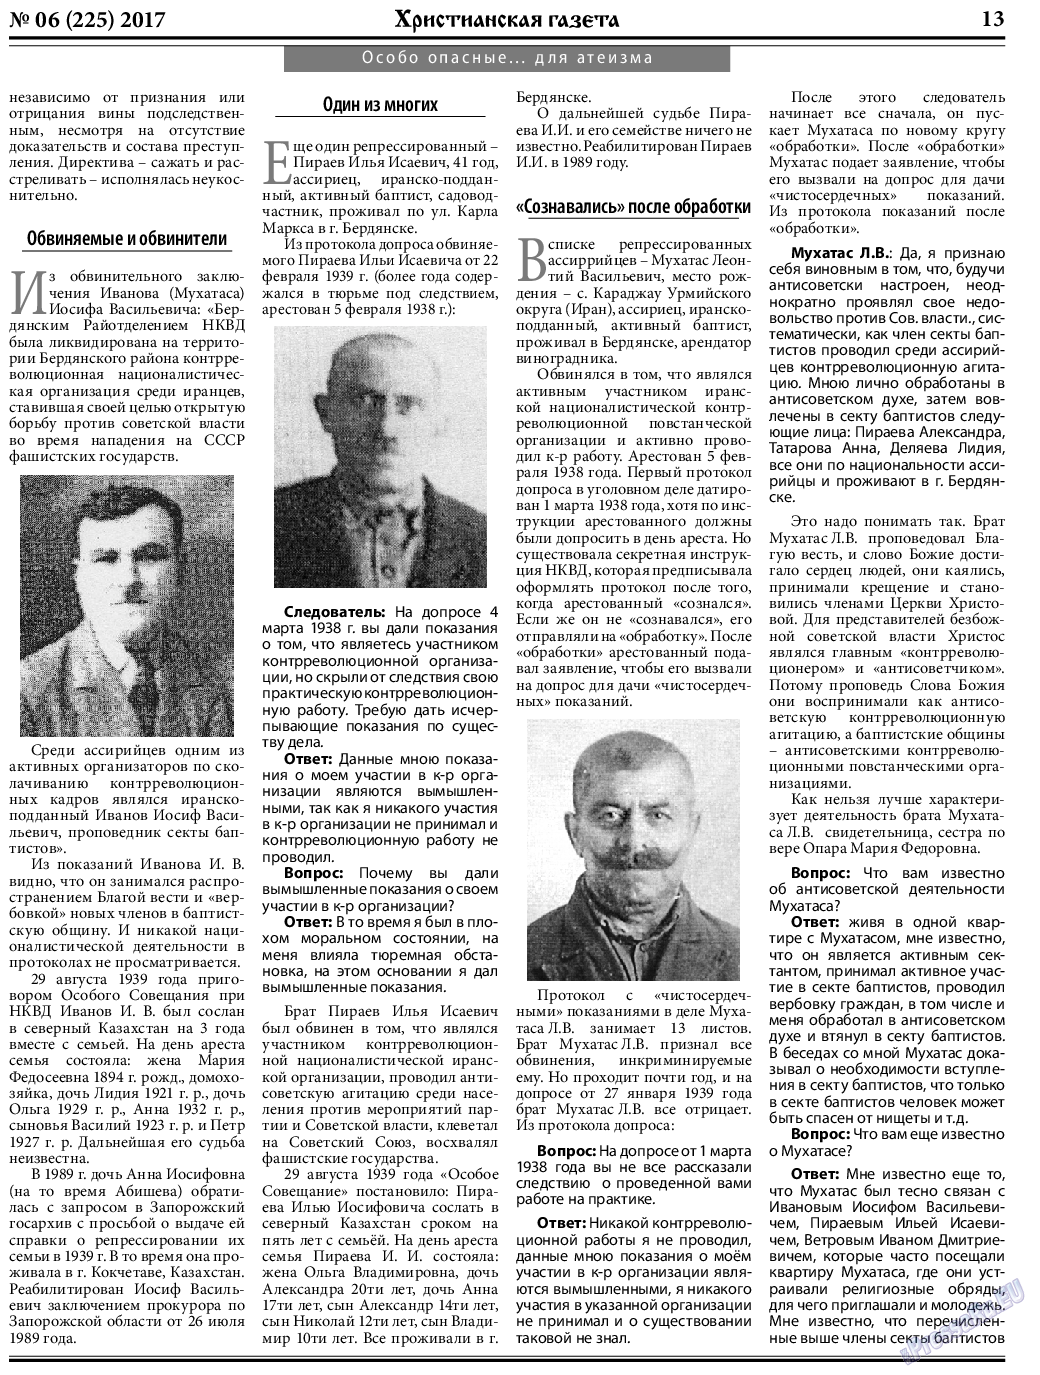 Христианская газета, газета. 2017 №6 стр.13